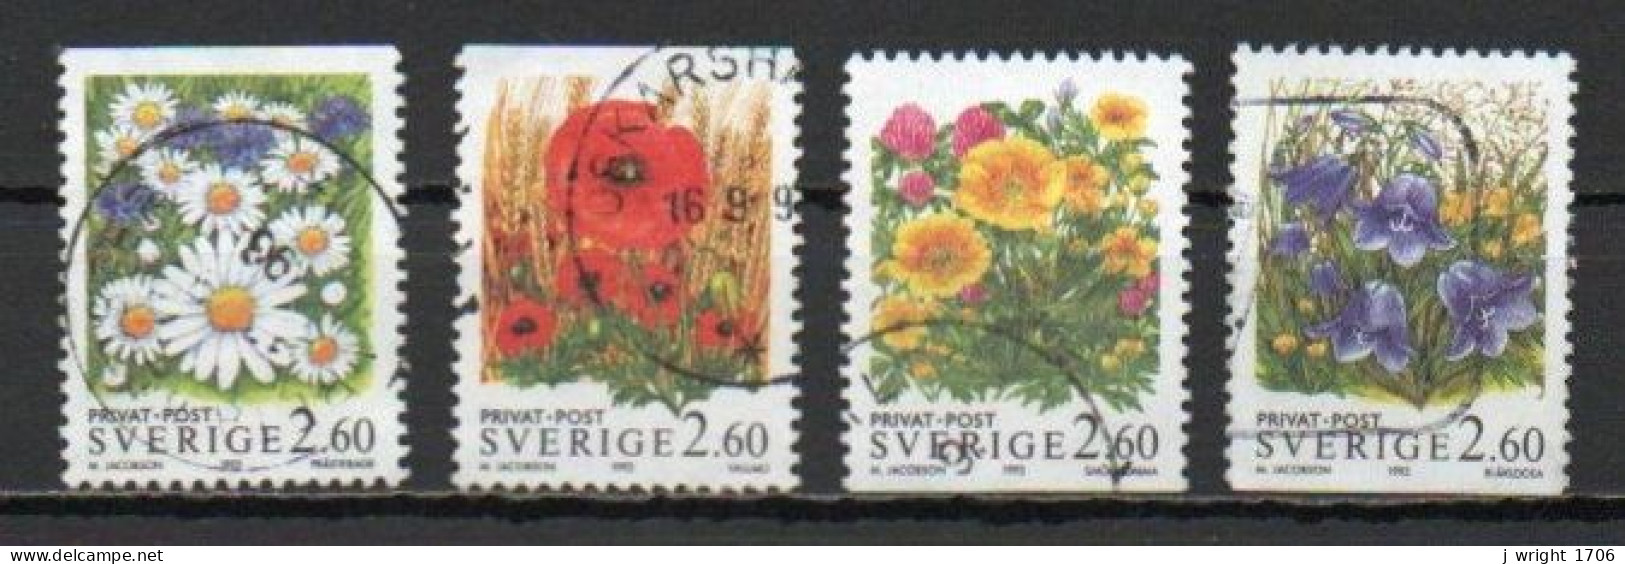 Sweden, 1993, Rebate Stamps/Flowers, Set, USED - Oblitérés